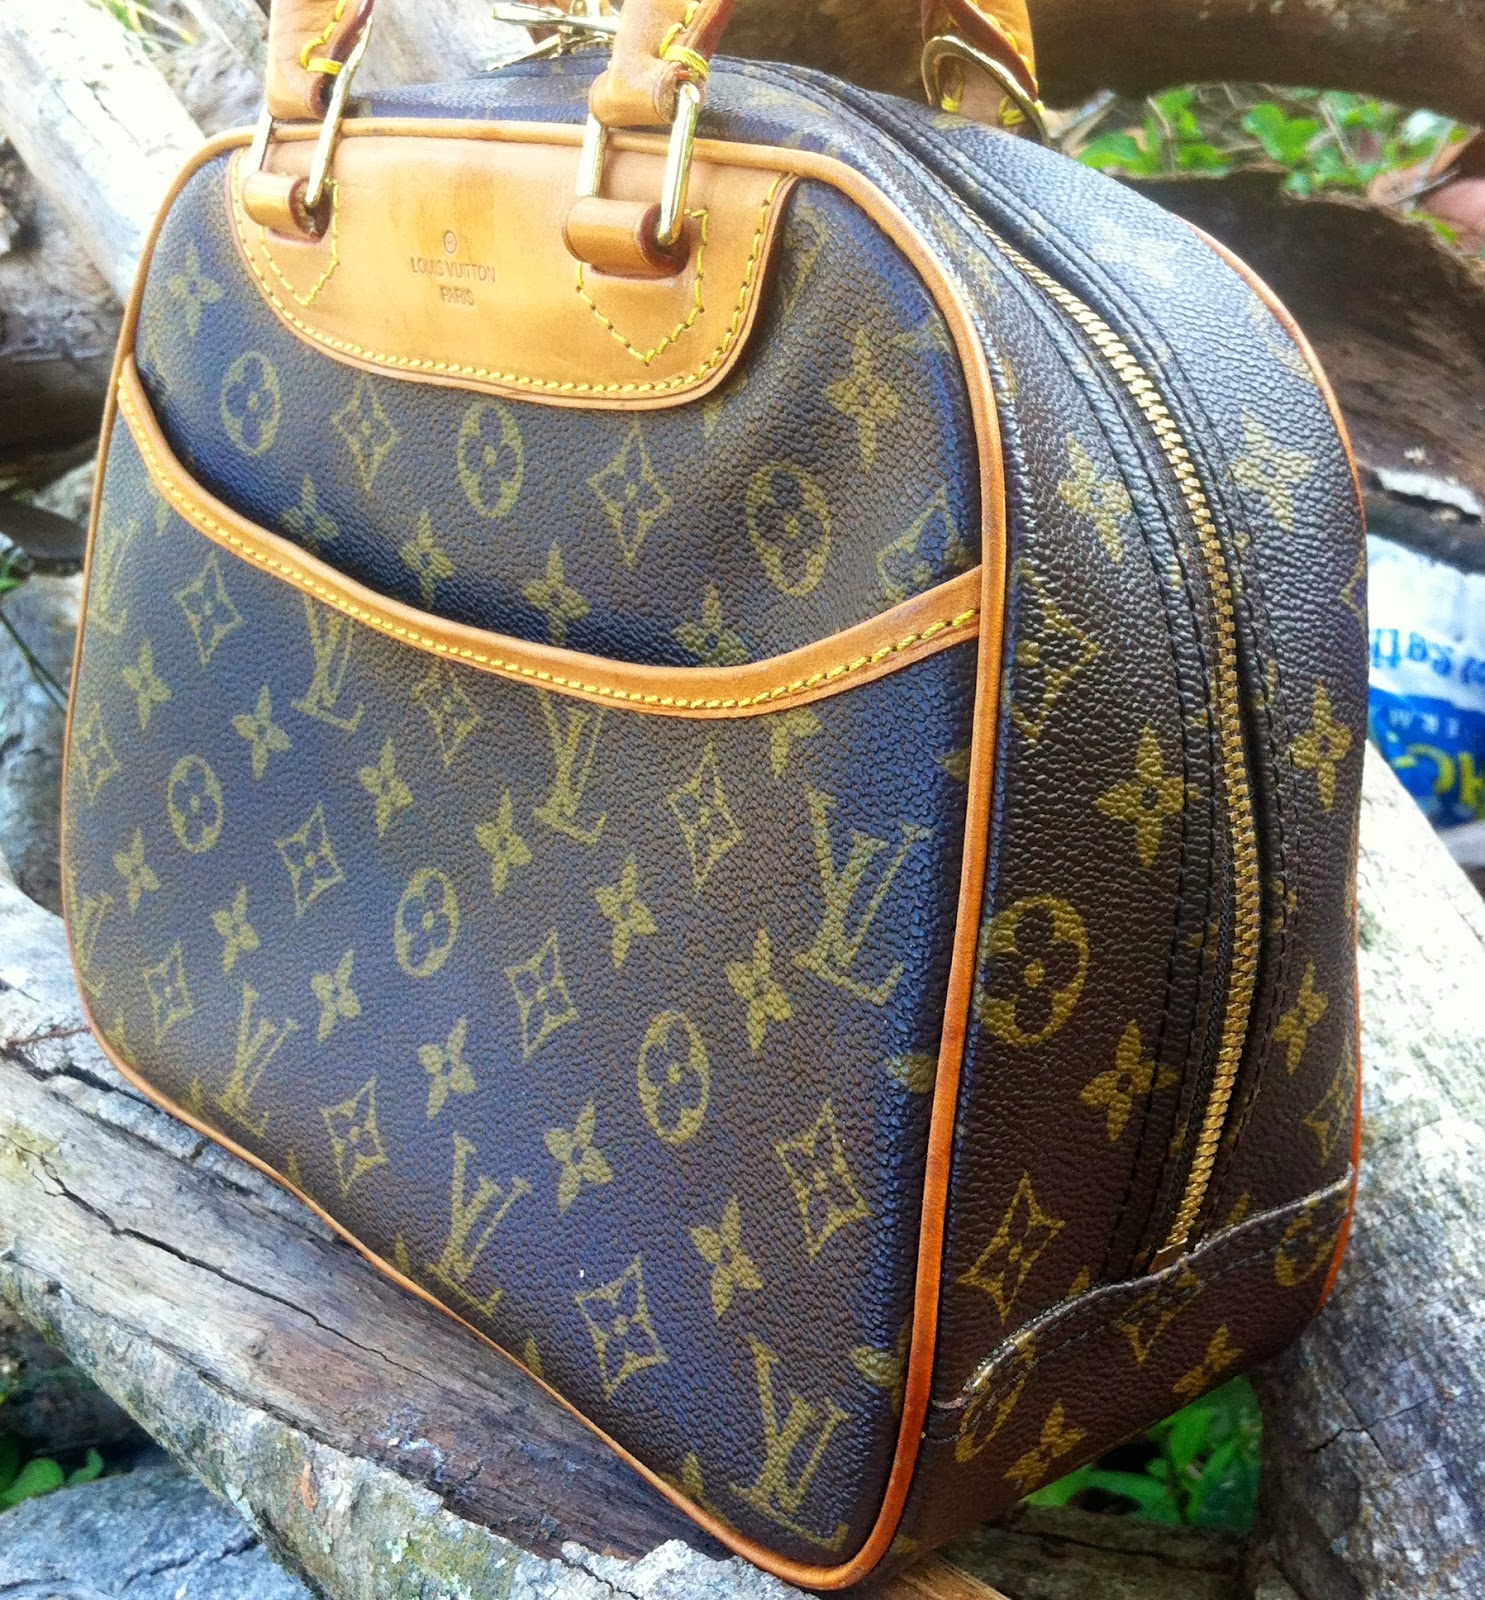 DYBUNDLE COLLECTION: Vintage Louis Vuitton Deauville handbag (sold)